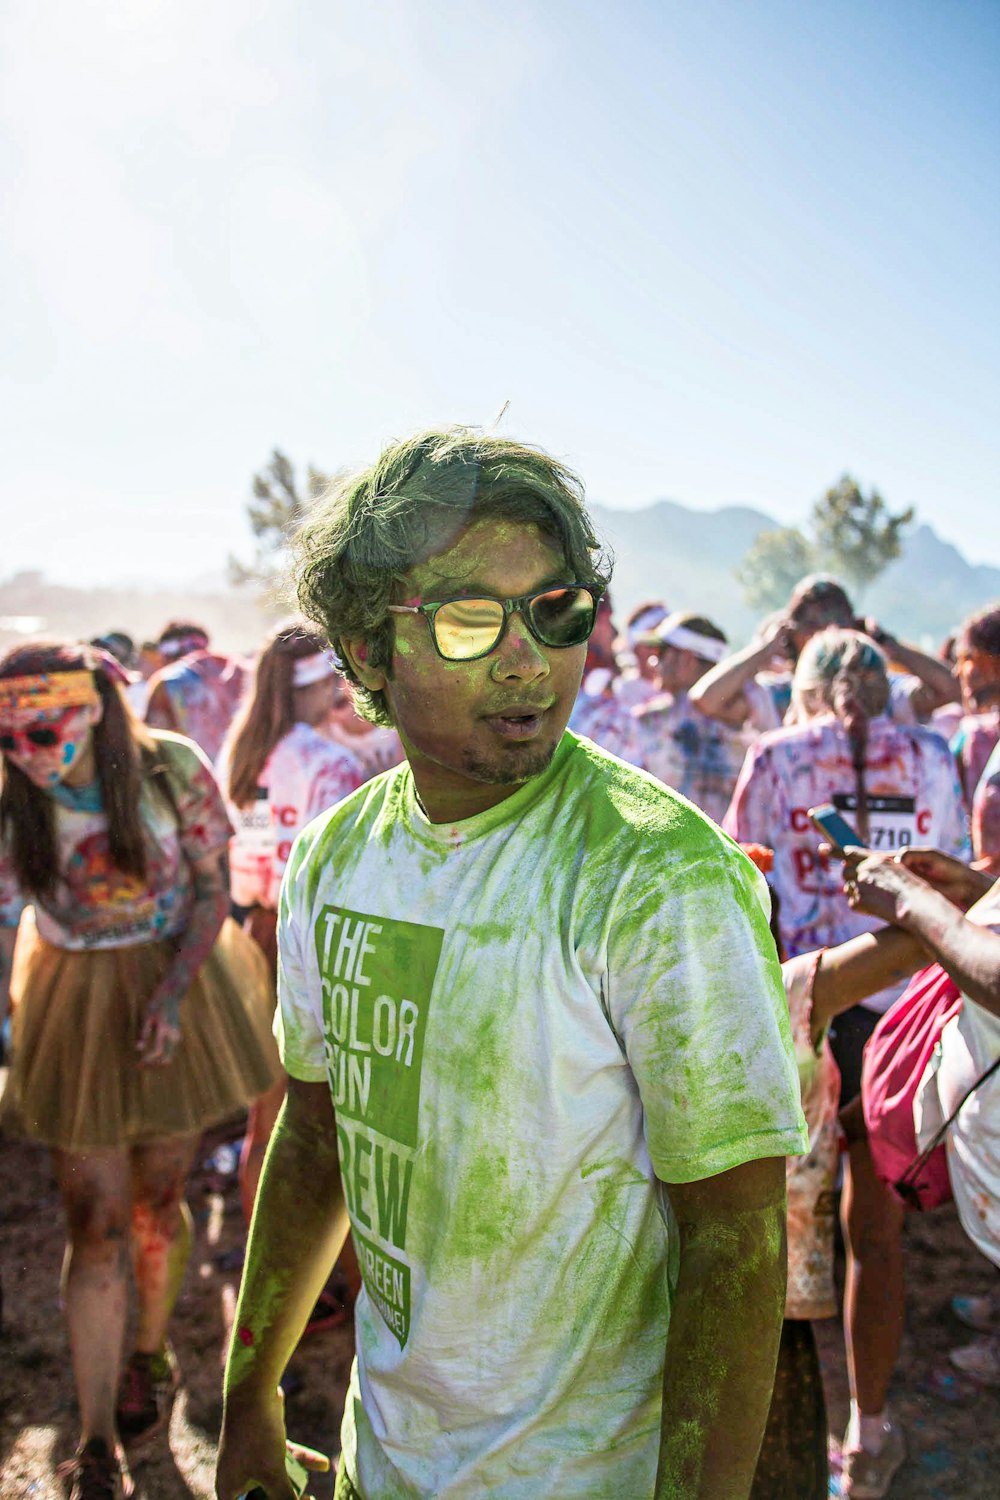 Mann im grünen Rundhals-T-Shirt mit Sonnenbrille, der tagsüber in der Nähe von Menschen steht